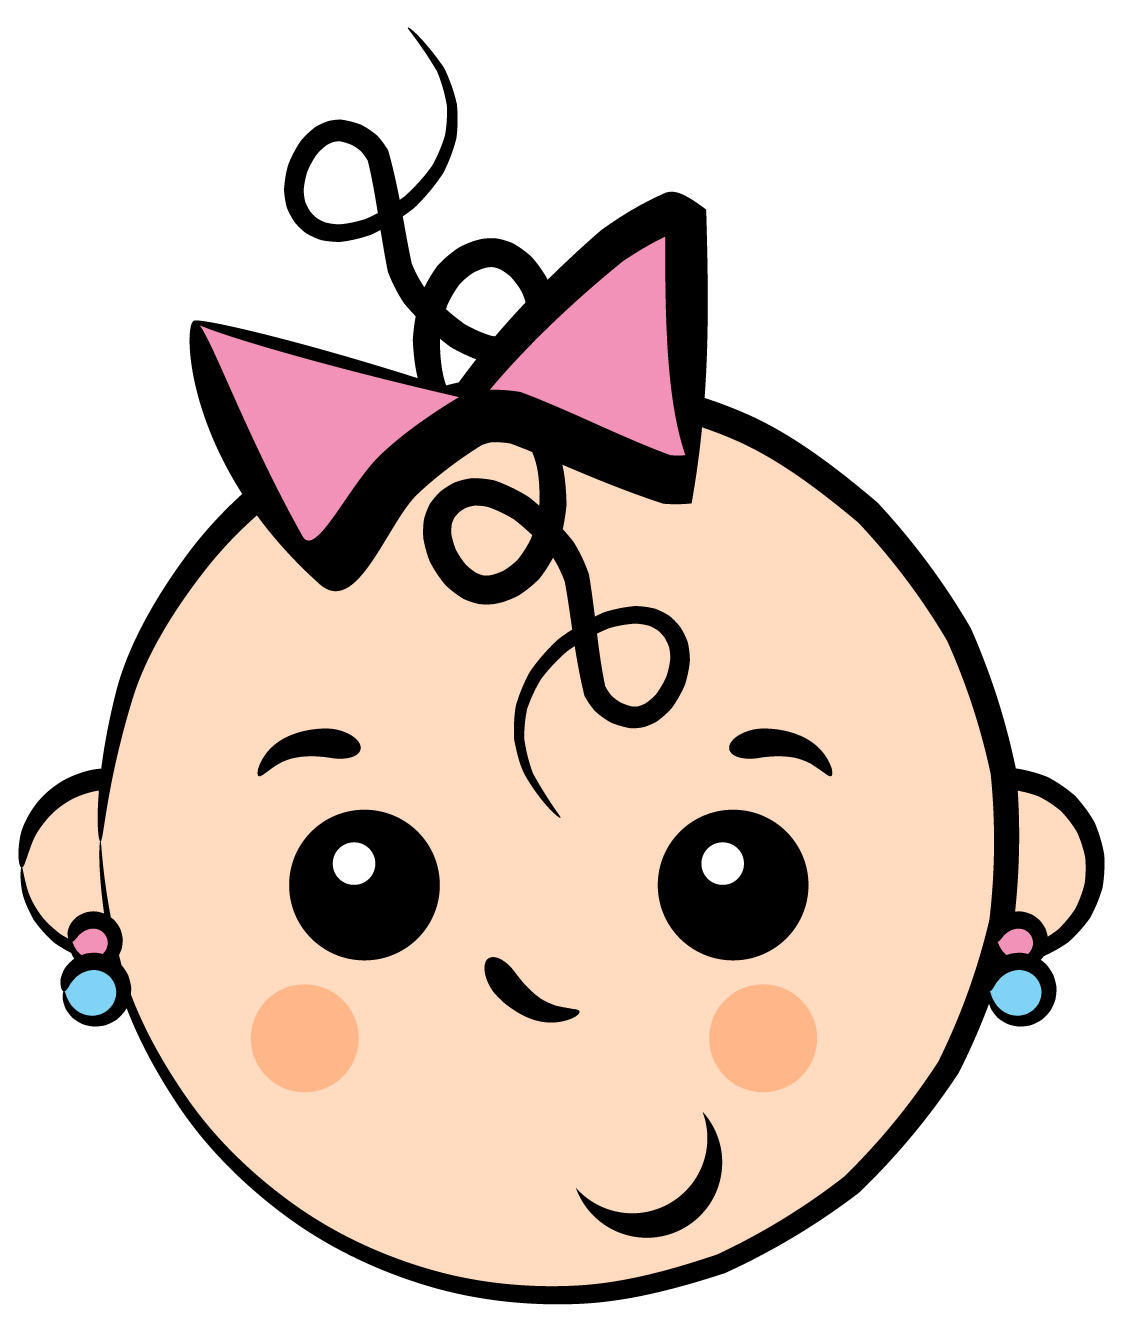 baby girl face cartoon - Clip Art Library